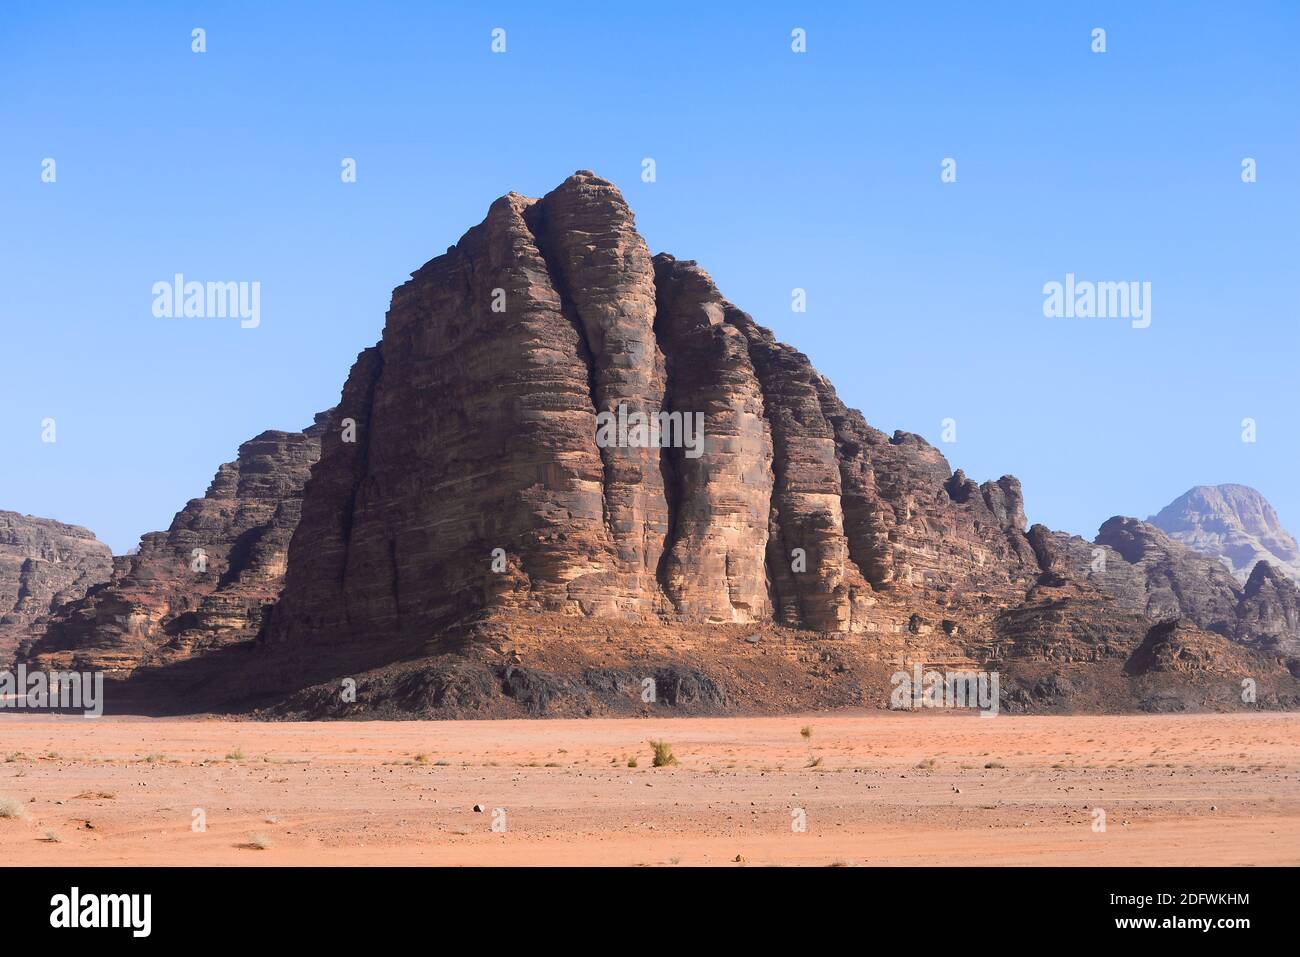 Les sept piliers de la sagesse à Wadi Rum, en Jordanie. Formation de roche de la Vallée de la Lune nommée par le célèbre film épique Lawrence d'Arabie. Wadi al-Qamar. Banque D'Images